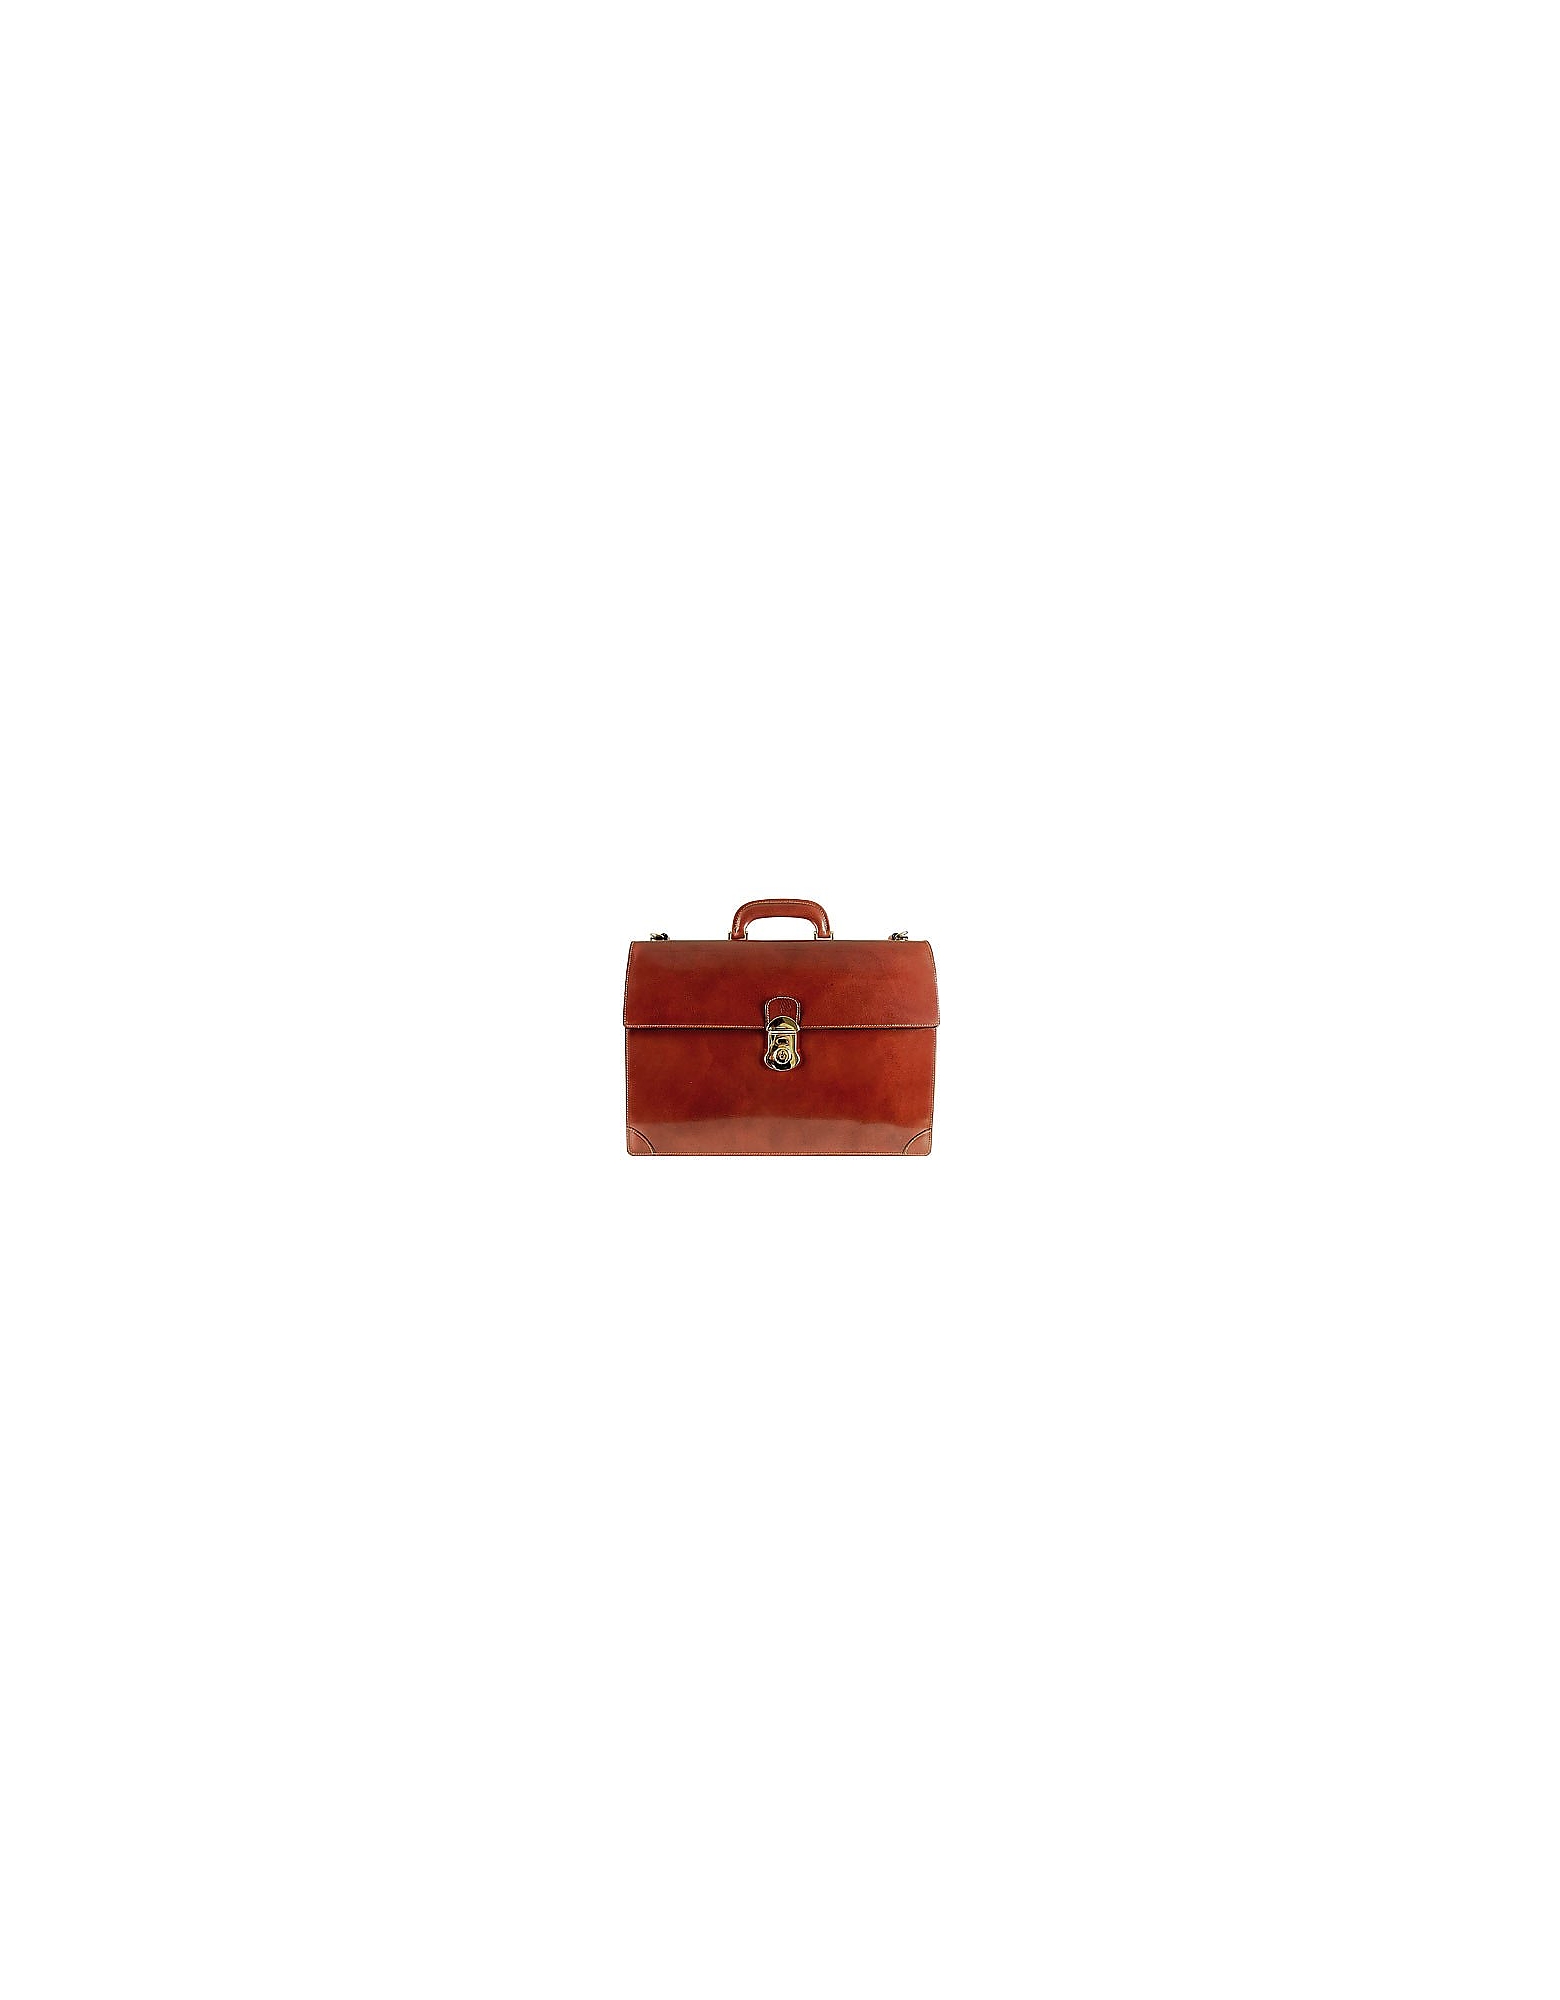 L.A.P.A. Designer Travel Bags, Classic Cognac Leather Briefcase